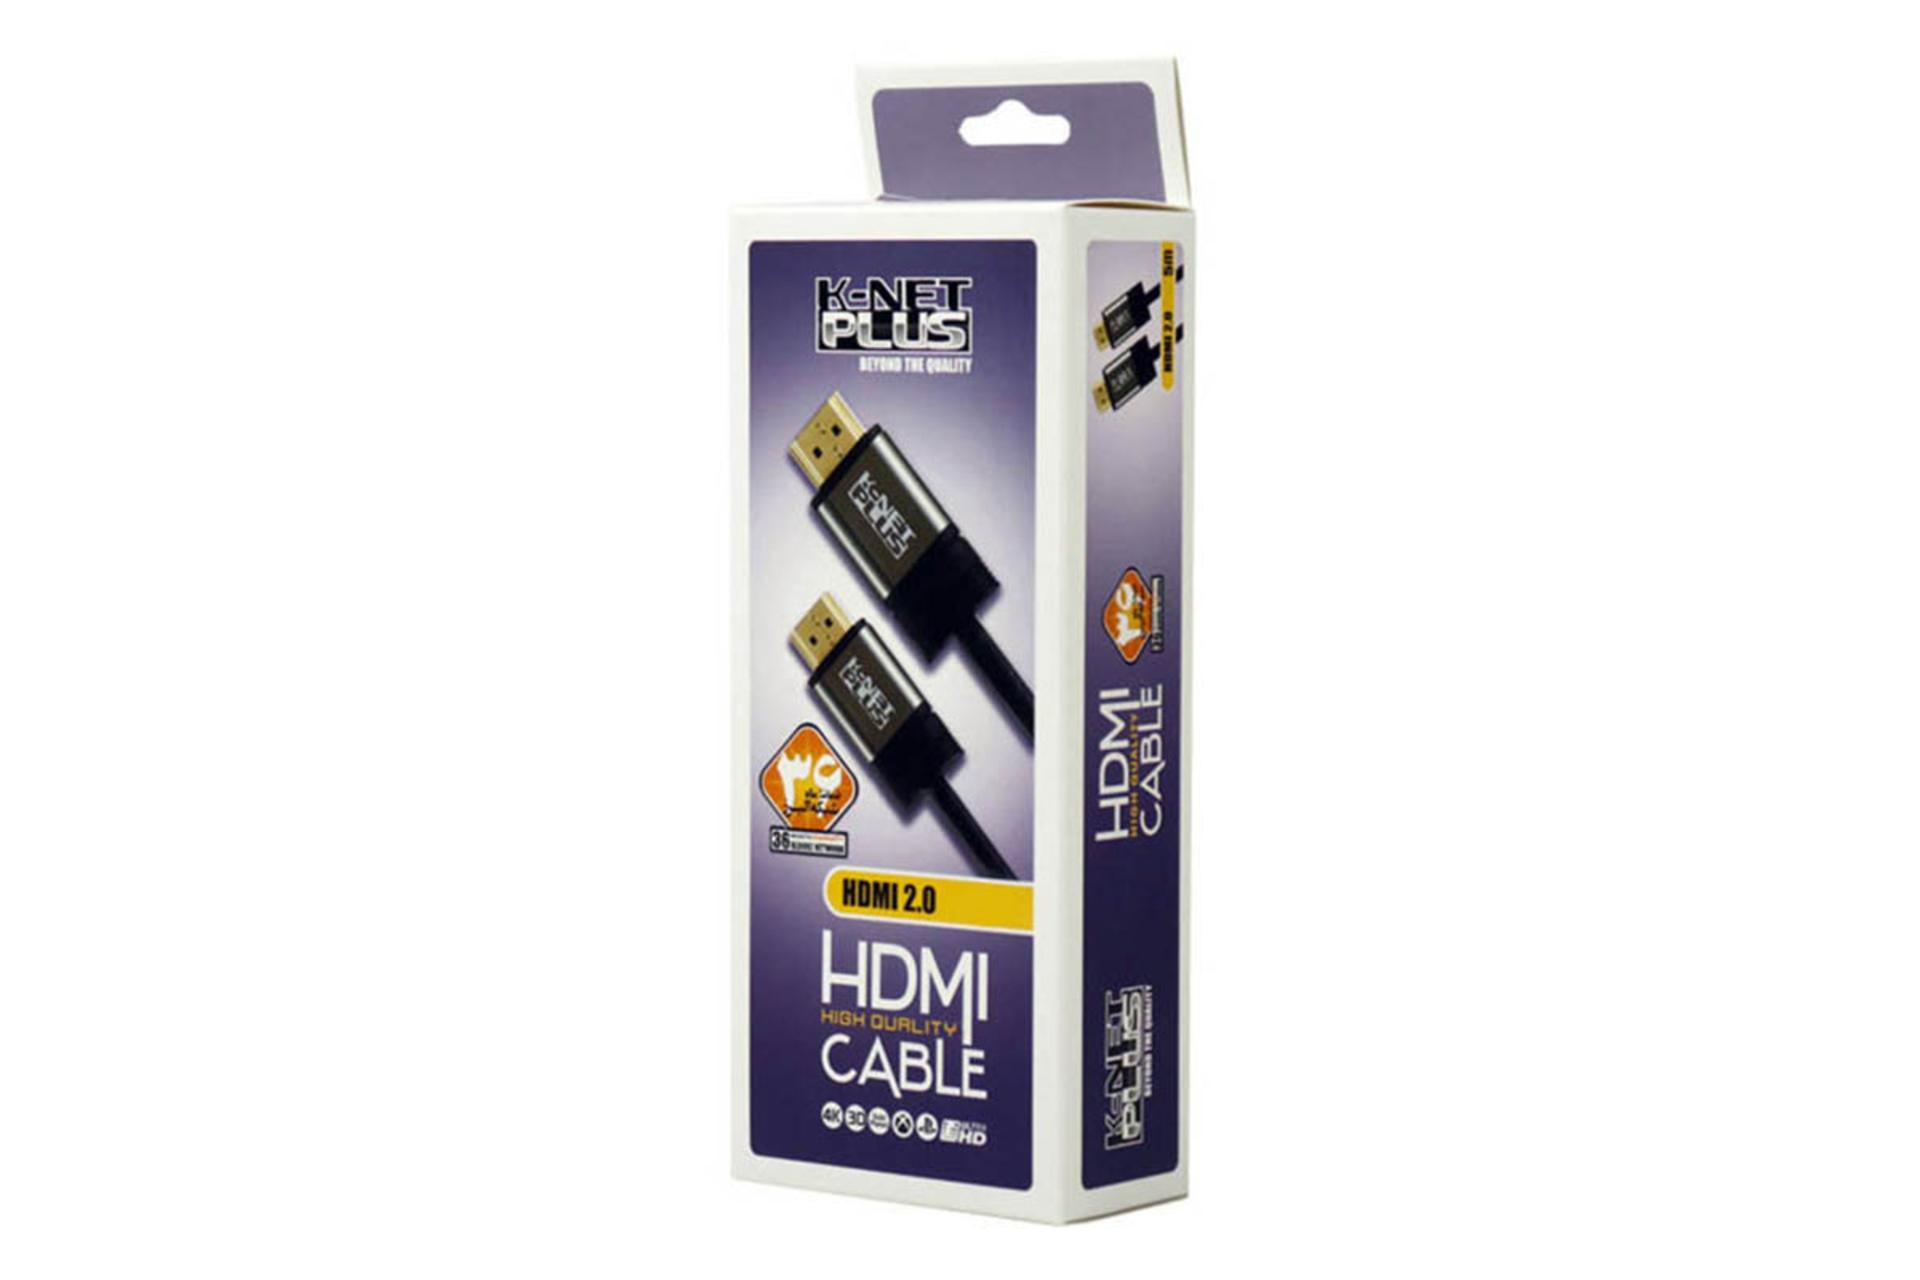 کابل HDMI کی نت پلاس HC152 4K 60Hz نسخه 2.0 با طول 3متر نمای جعبه